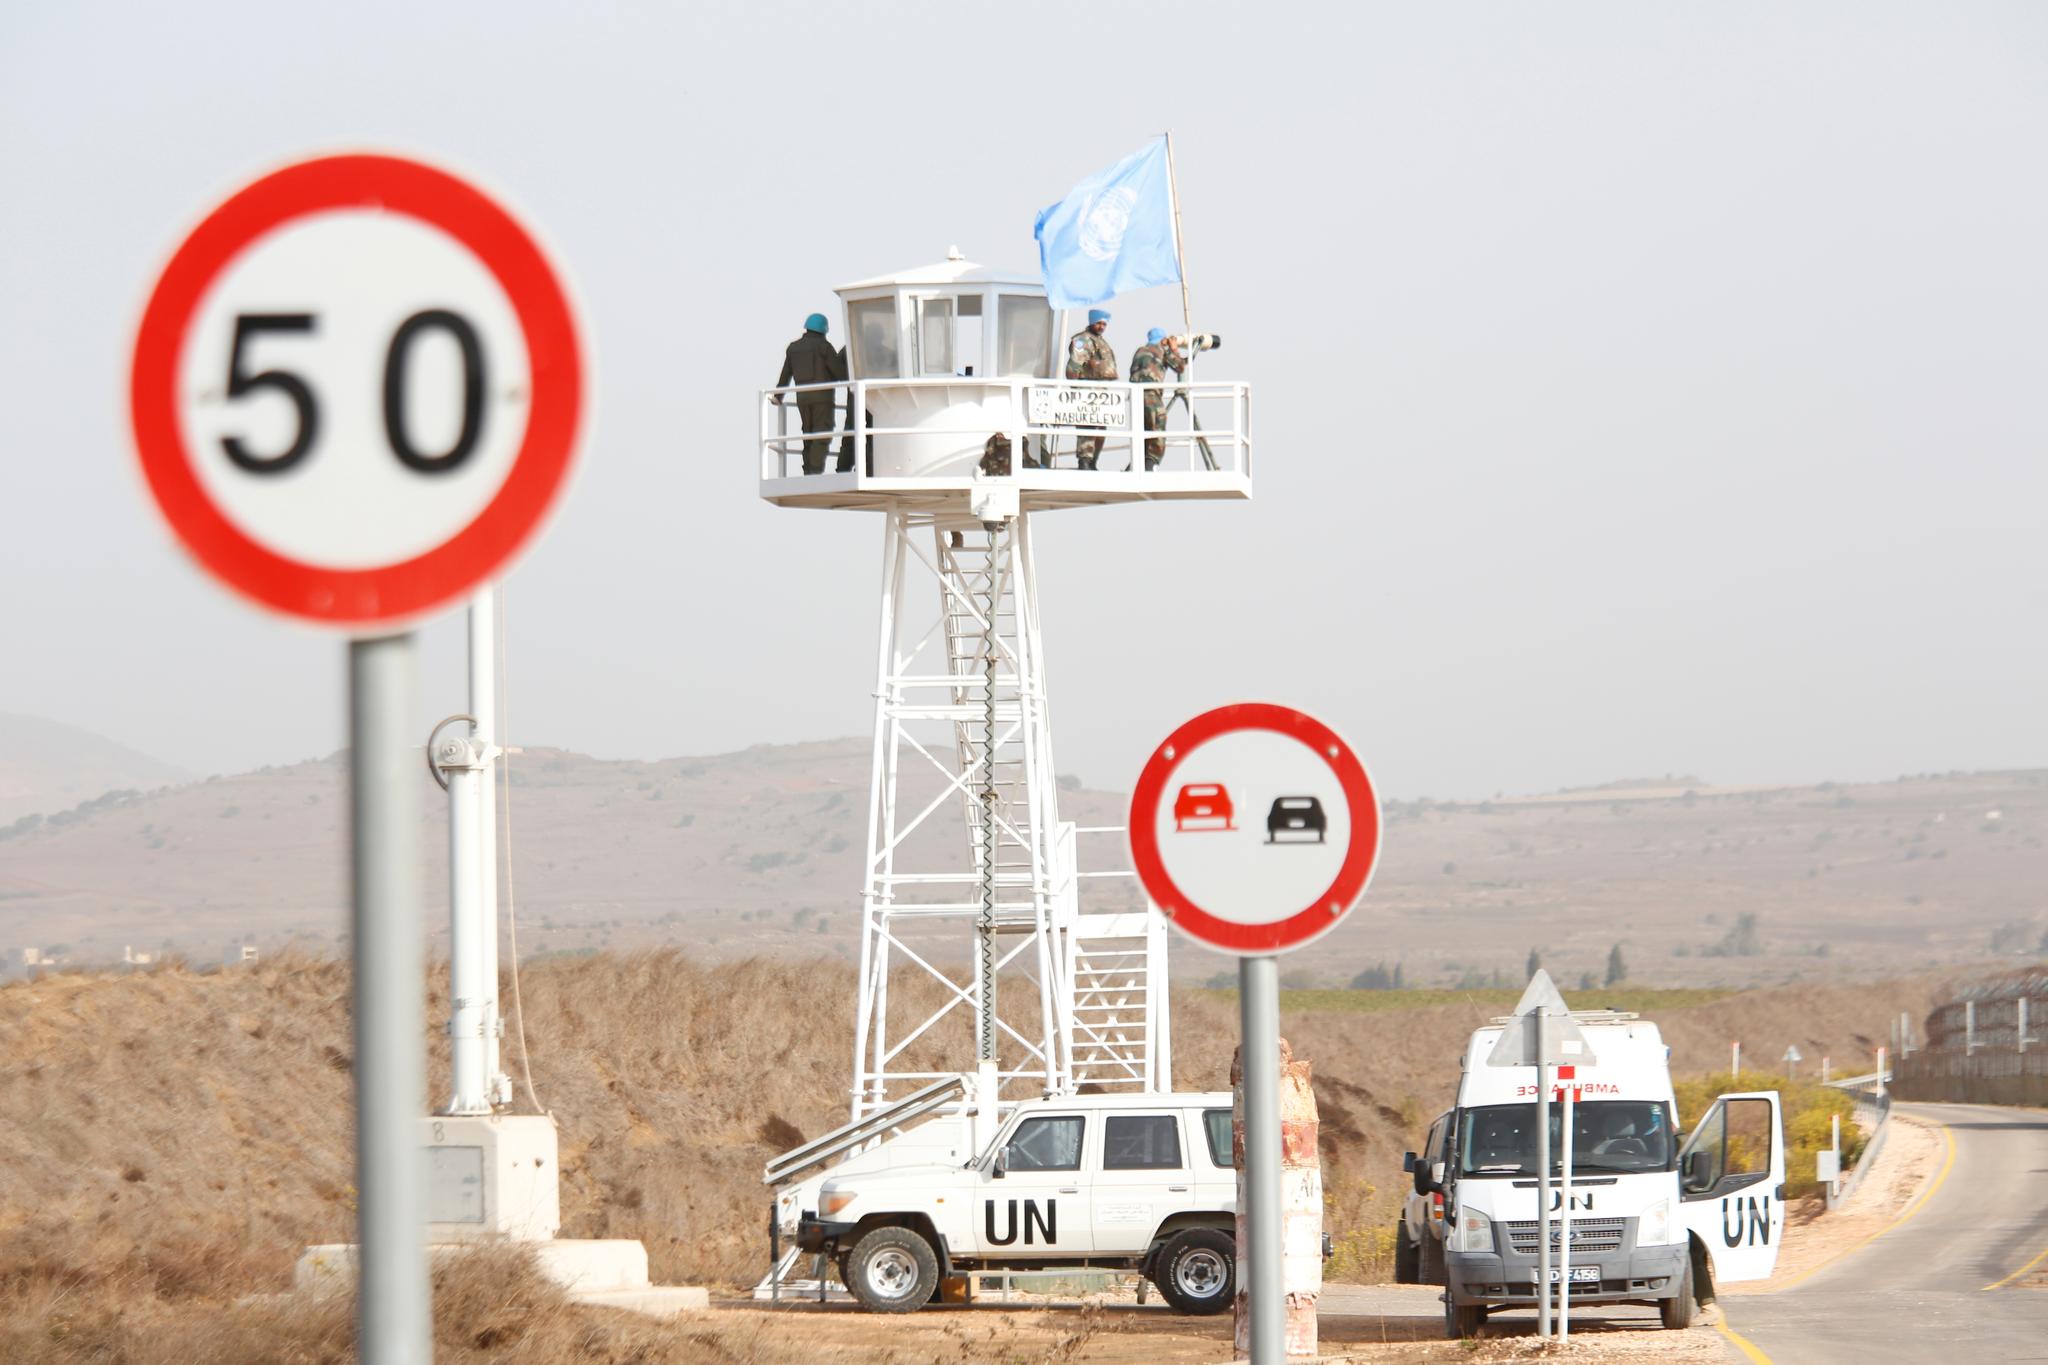 FN har hatt tilstedeværelse i Golanhøydende siden 70-tallet.